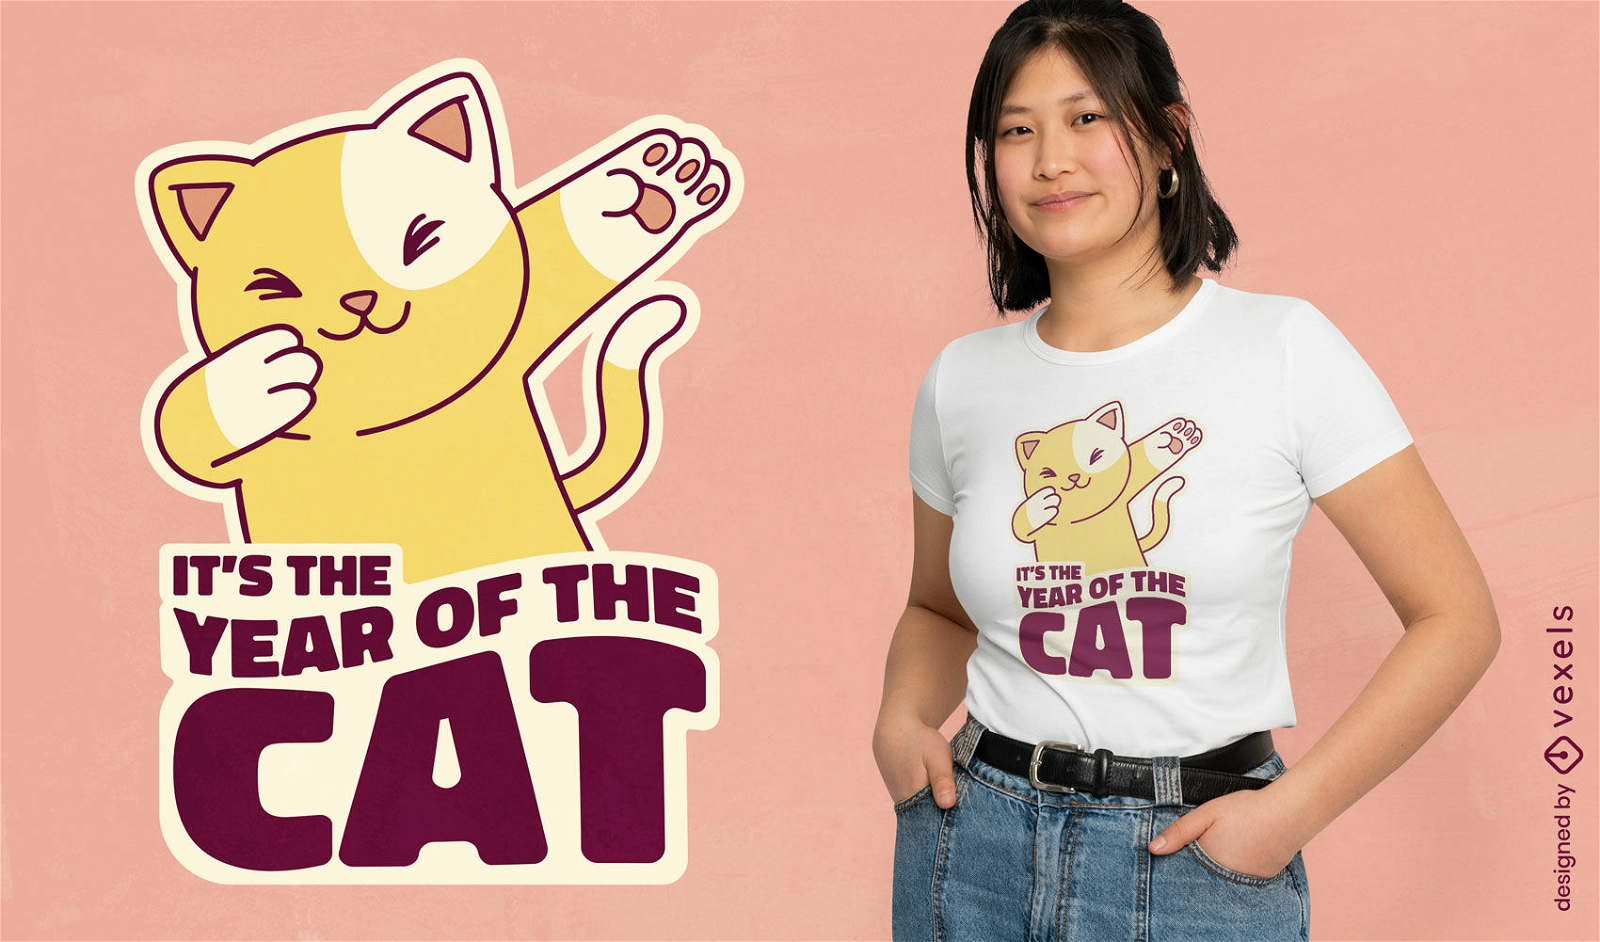 Dise?o de camiseta del a?o del gato.